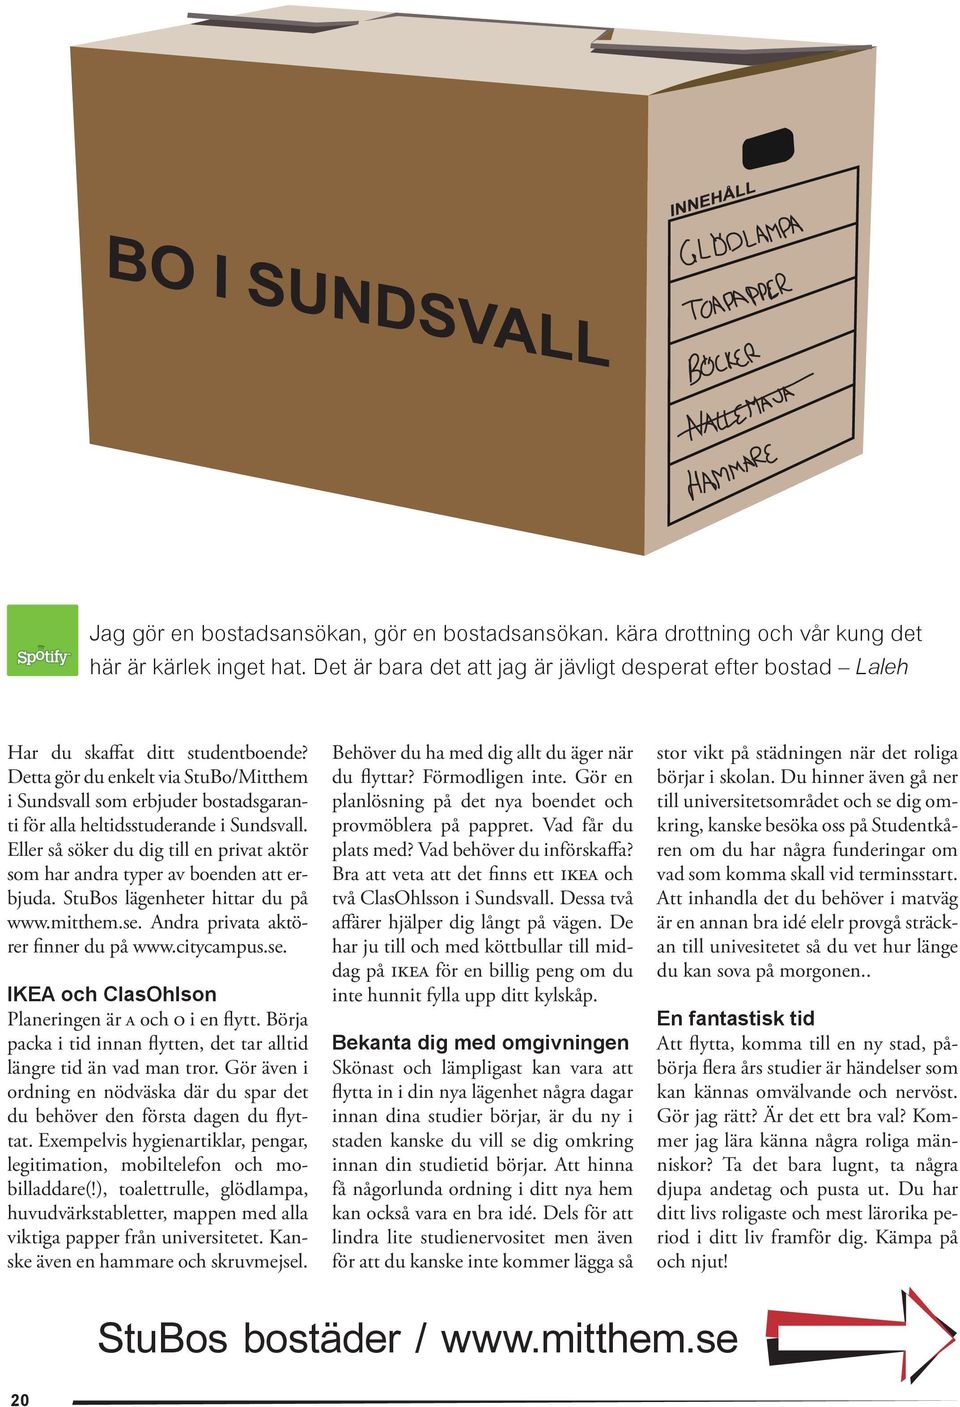 Detta gör du enkelt via StuBo/Mitthem i Sundsvall som erbjuder bostadsgaranti för alla heltidsstuderande i Sundsvall.